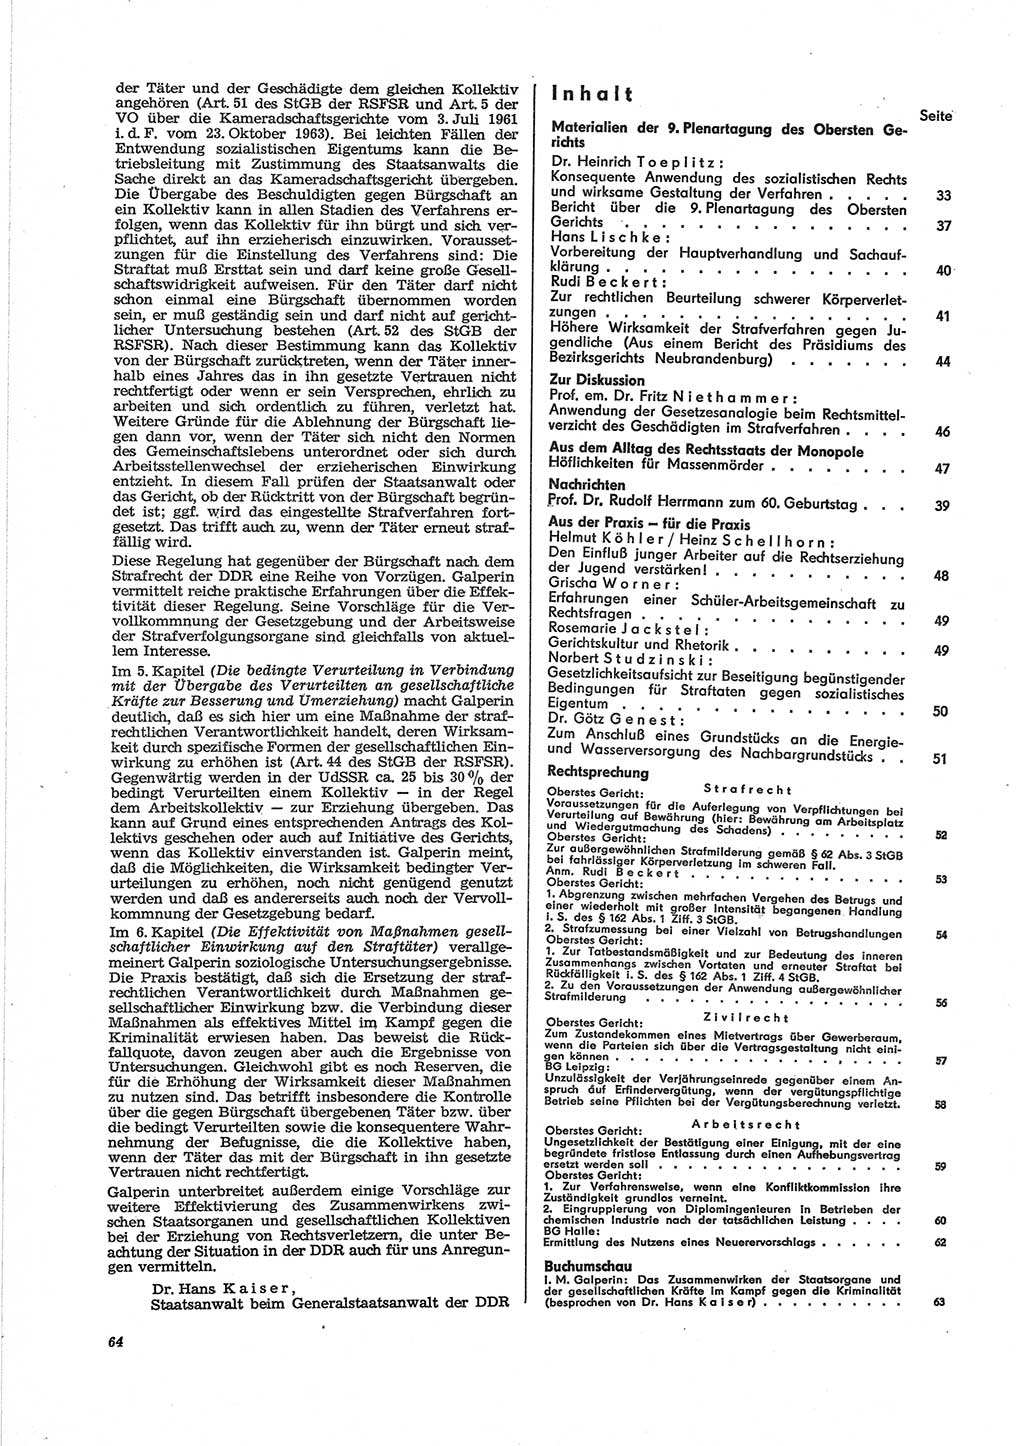 Neue Justiz (NJ), Zeitschrift für Recht und Rechtswissenschaft [Deutsche Demokratische Republik (DDR)], 28. Jahrgang 1974, Seite 64 (NJ DDR 1974, S. 64)